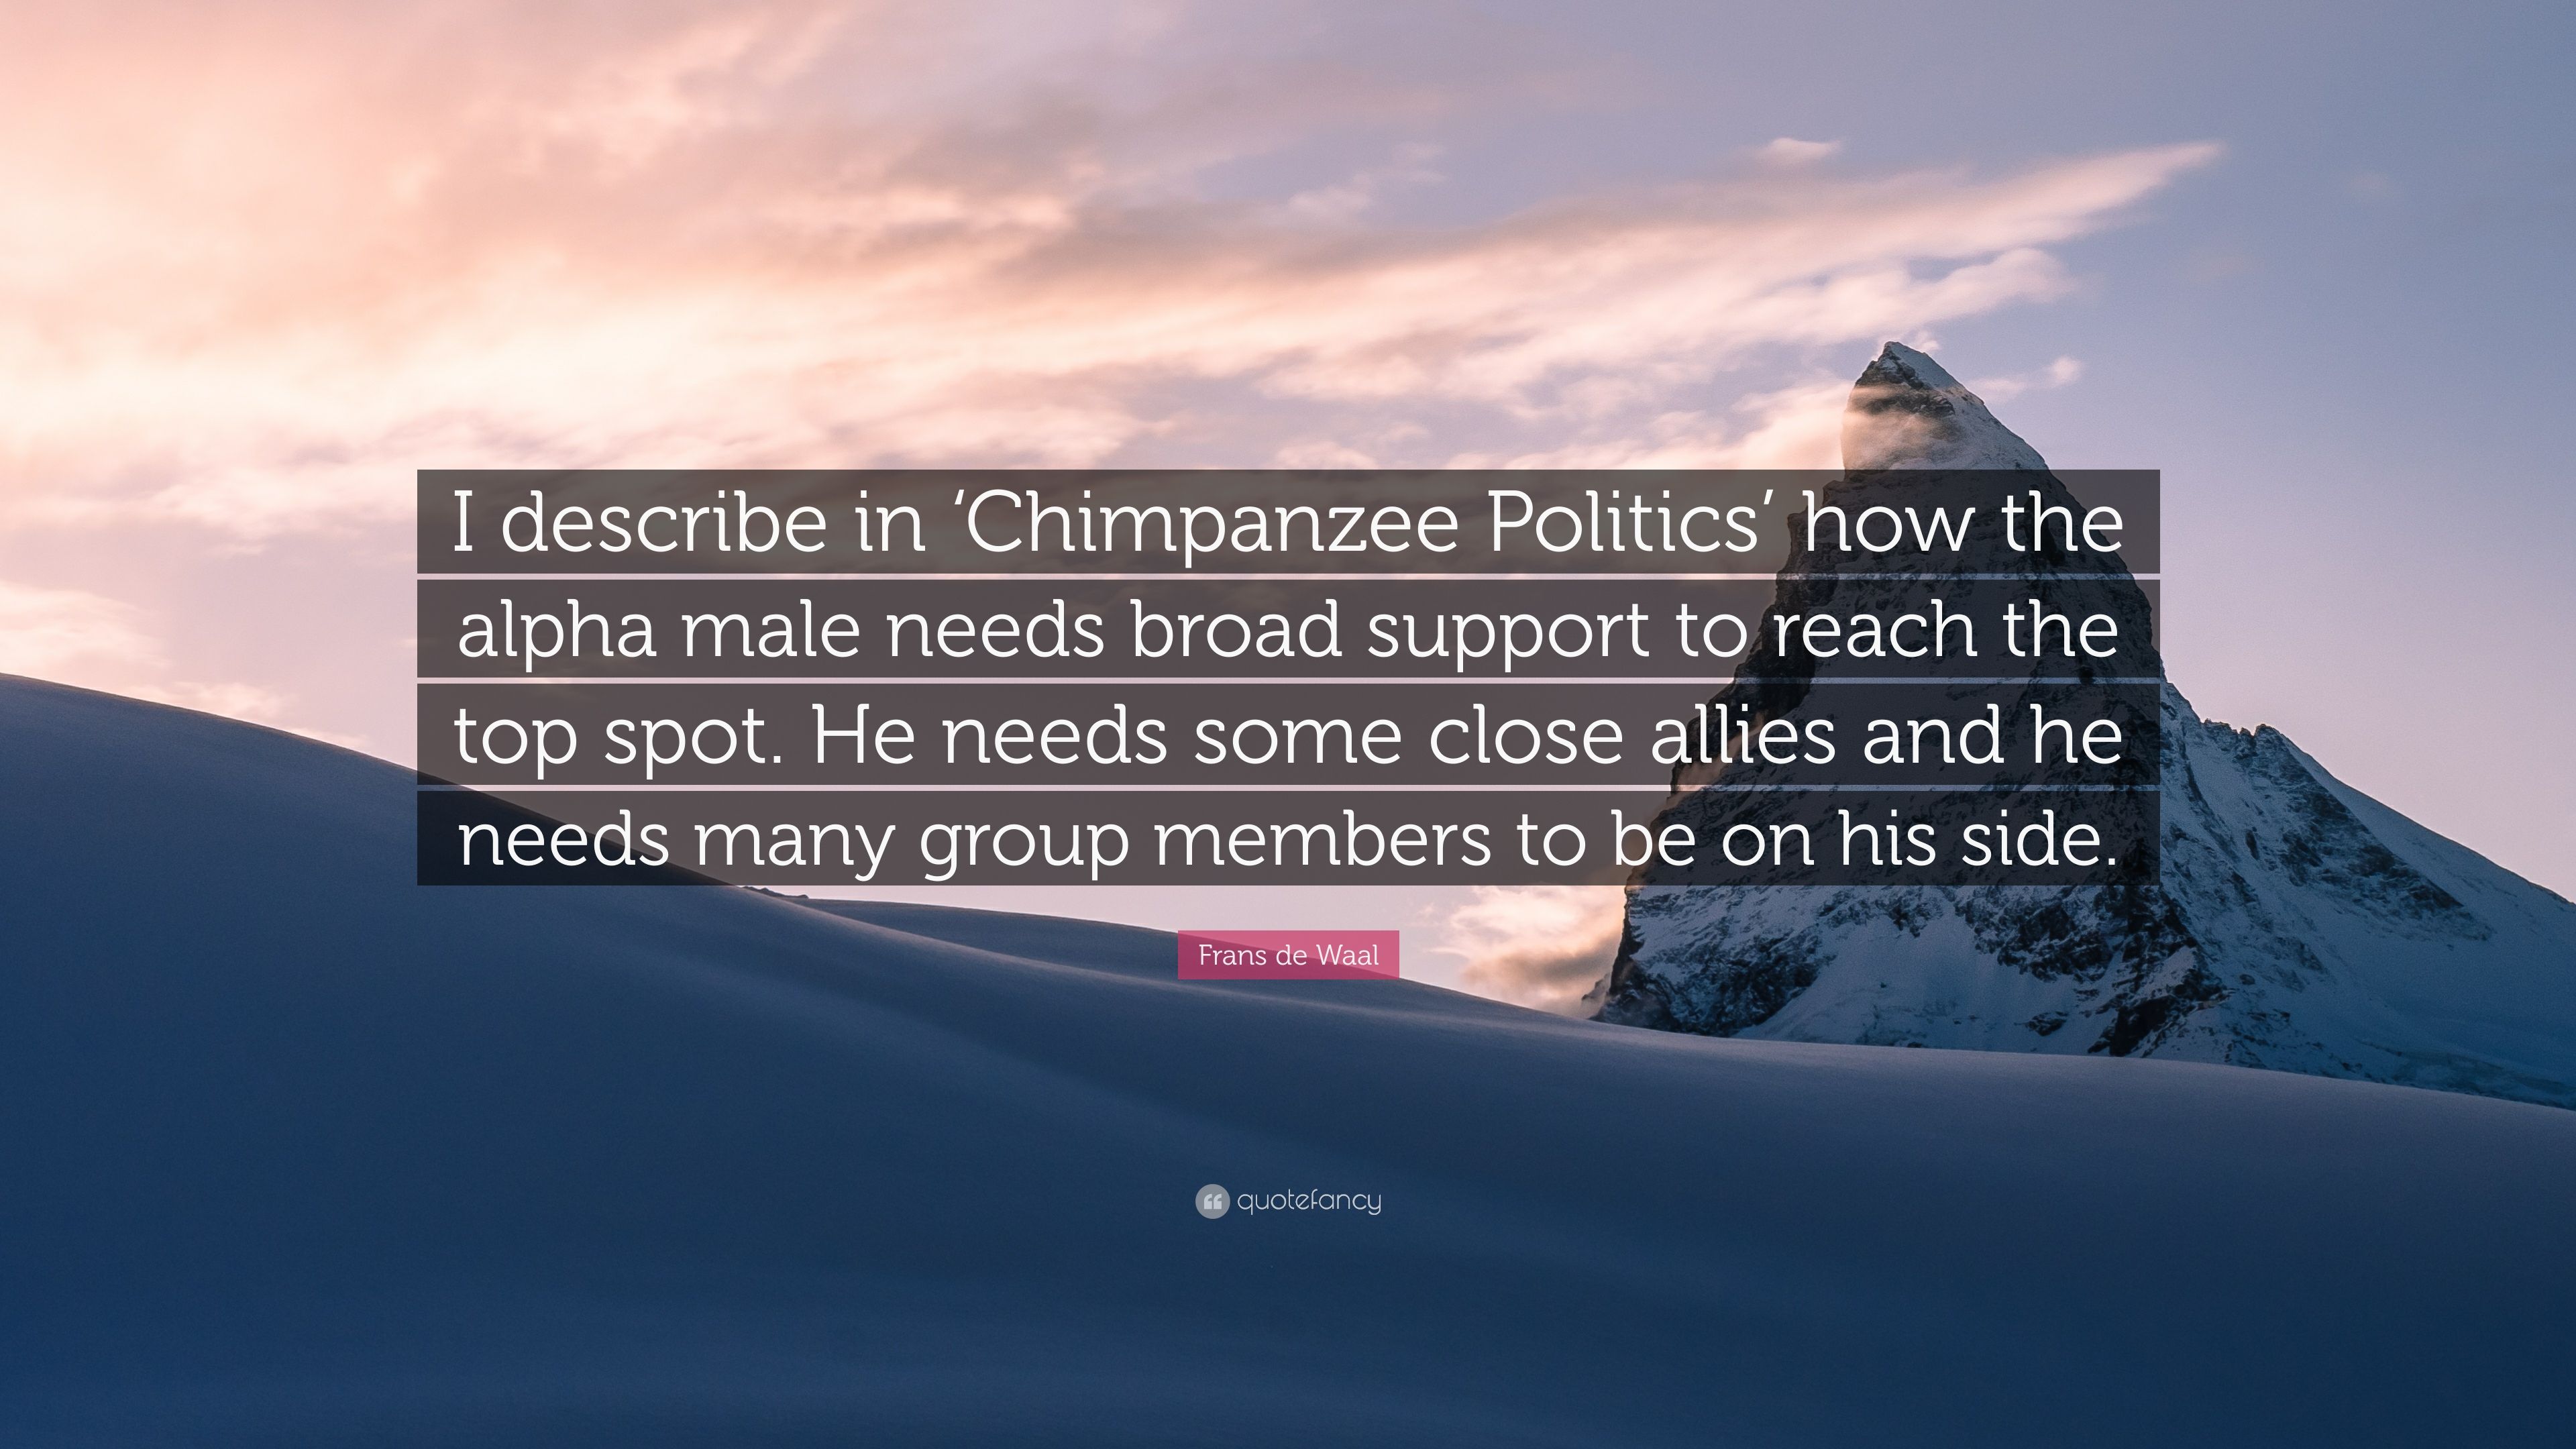 Frans de Waal Quote: “I describe in 'Chimpanzee Politics' how